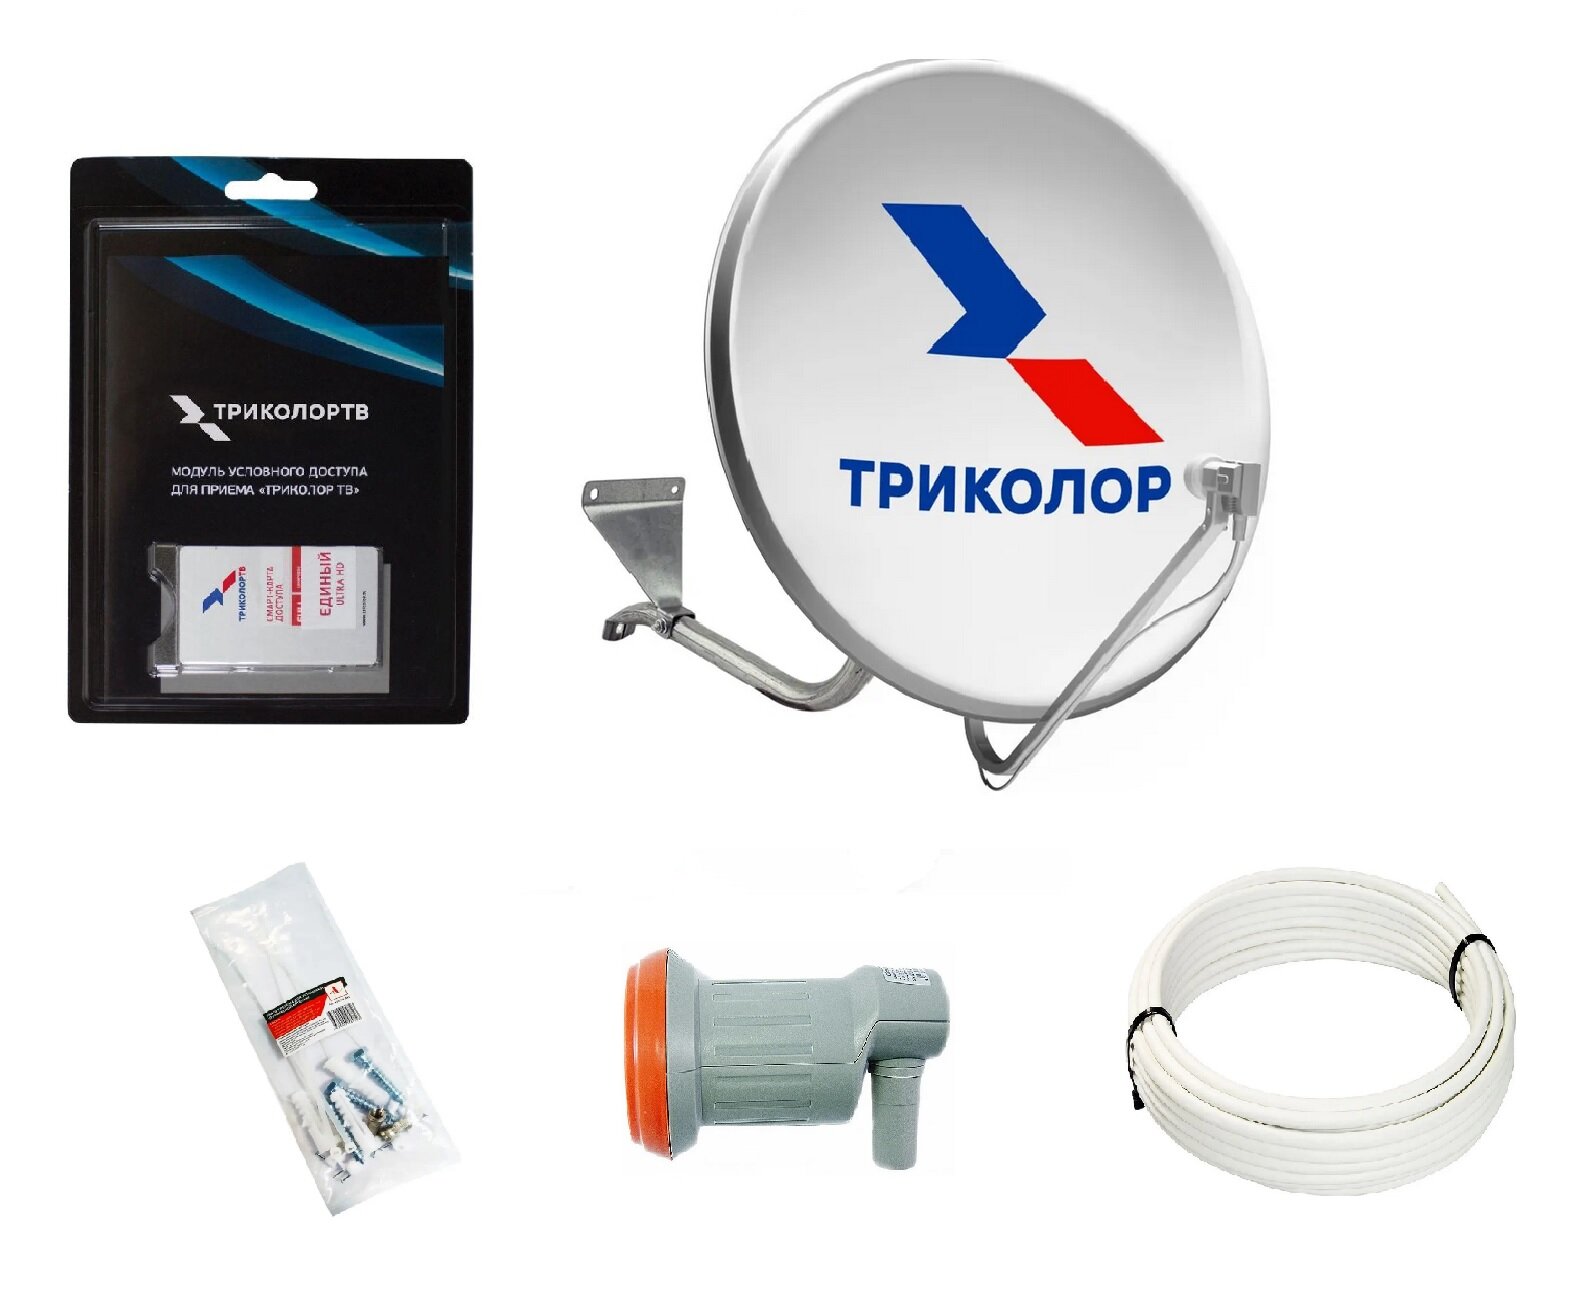 Комплект спутникового ТВ Триколор с модулем условного доступа+подписка 31 день (Центр Единый 1500 руб./год)